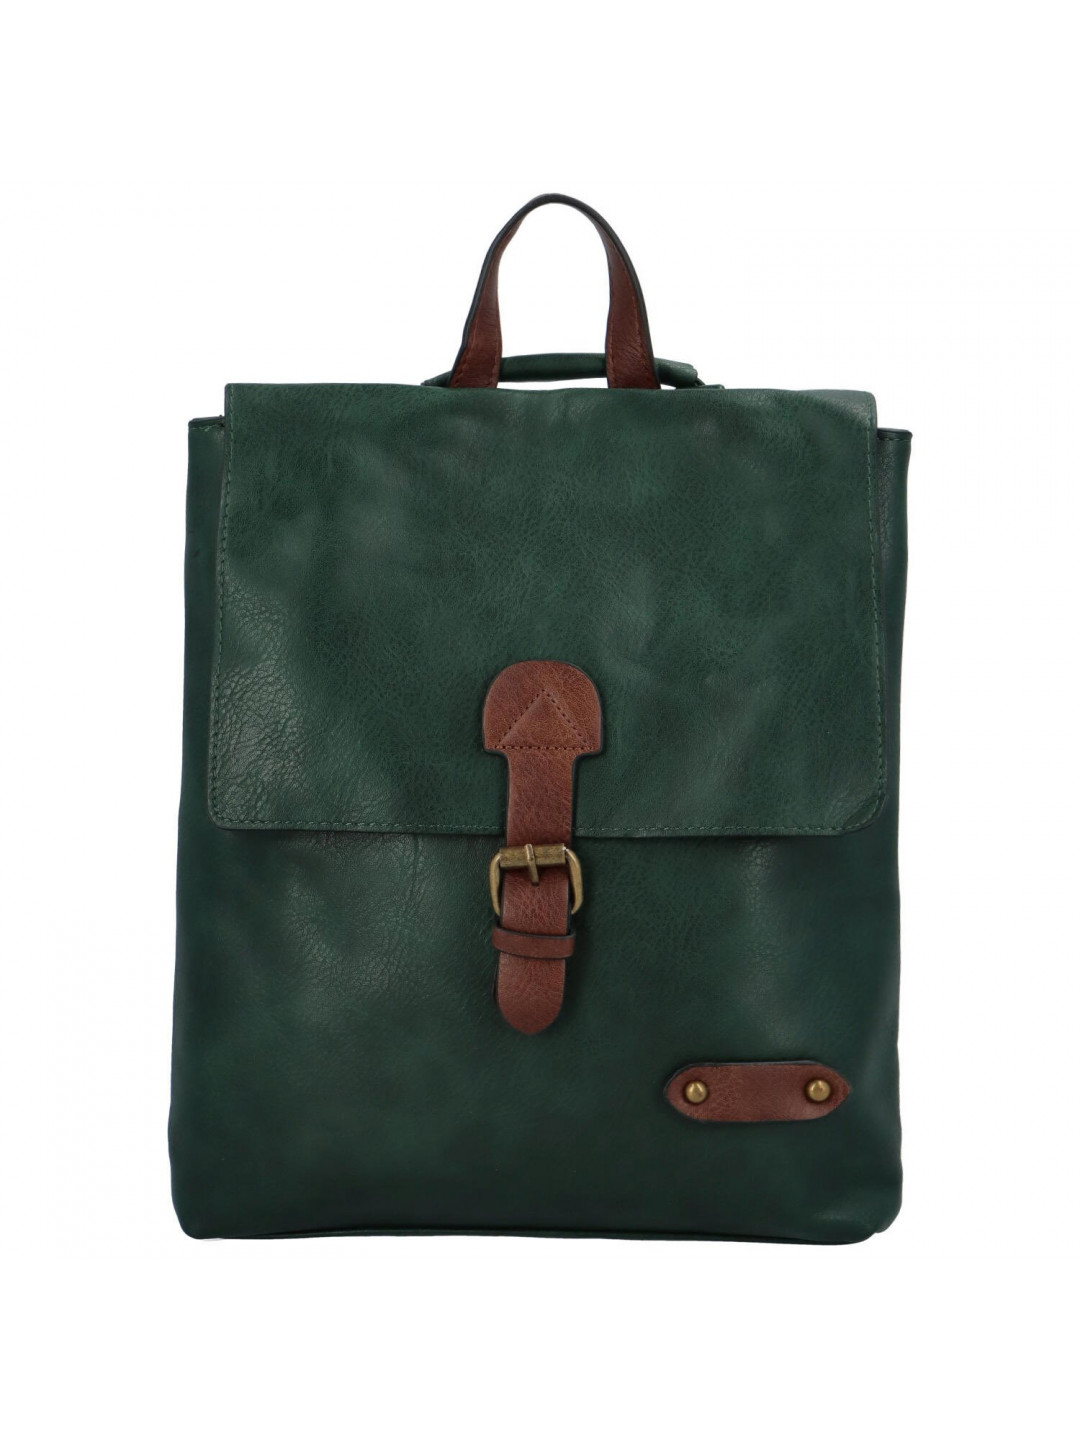 Dámský kabelko batoh zelený – Coveri Atalanta